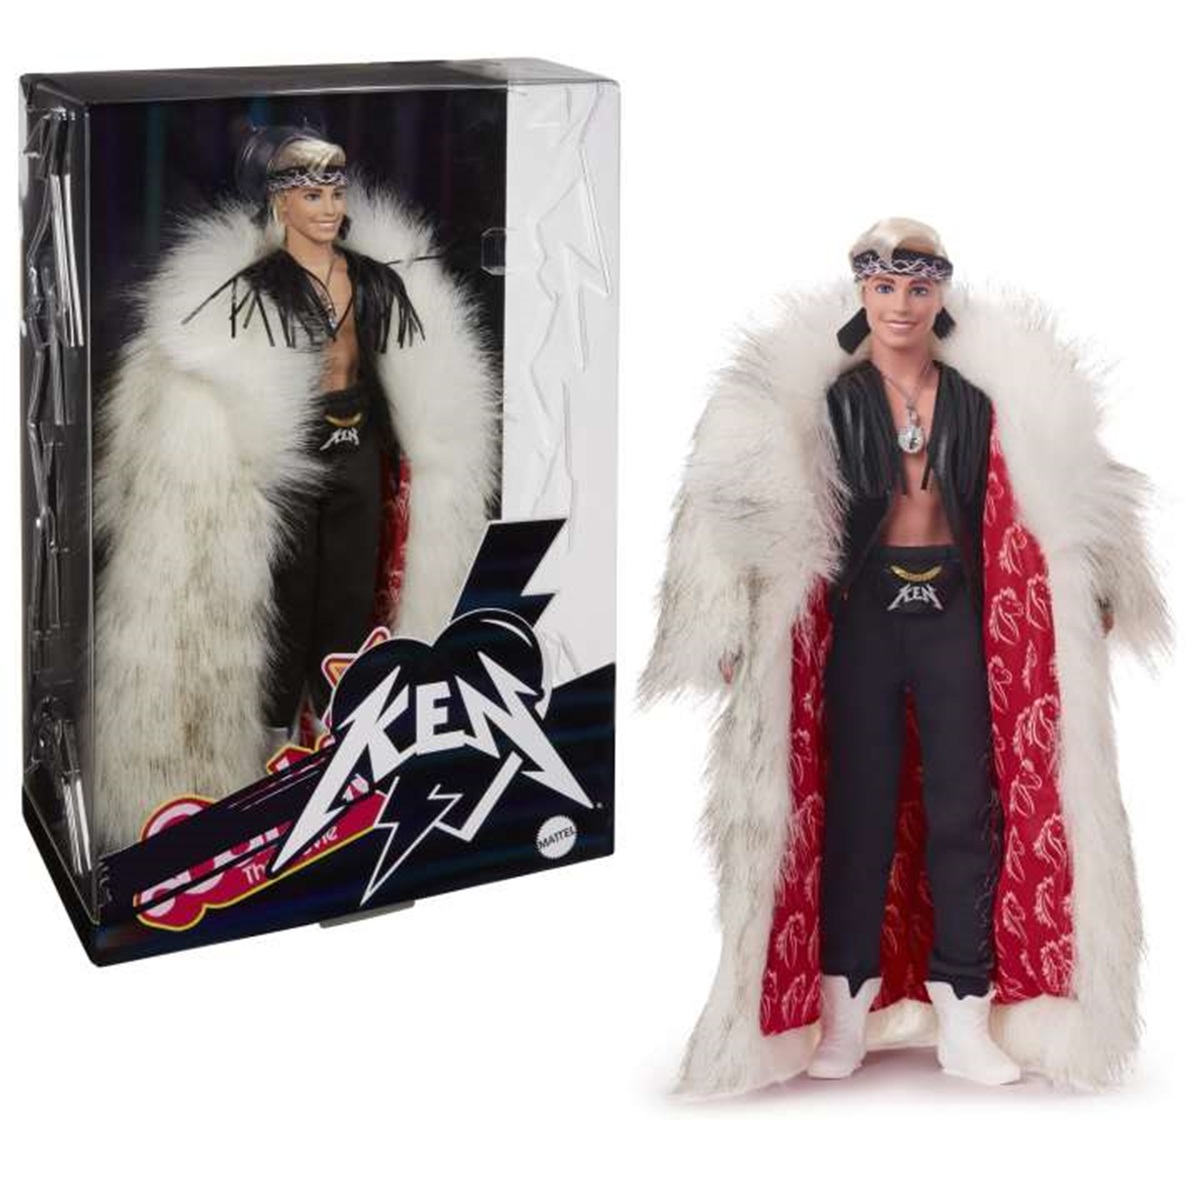 Ken doll wearing headband and fur coat